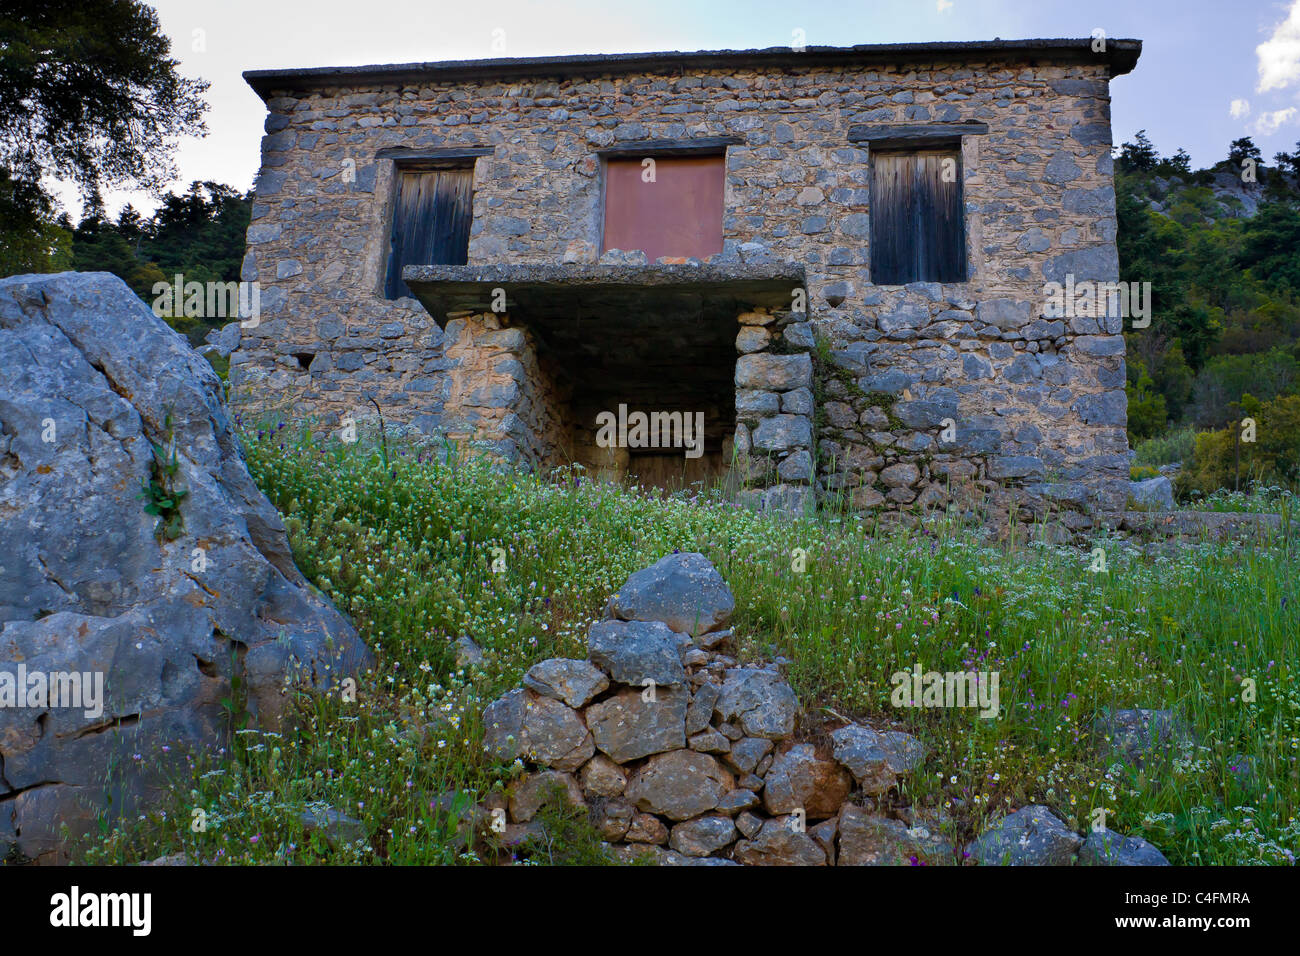 Maison typique en pierre dans la campagne à l'aube Banque D'Images